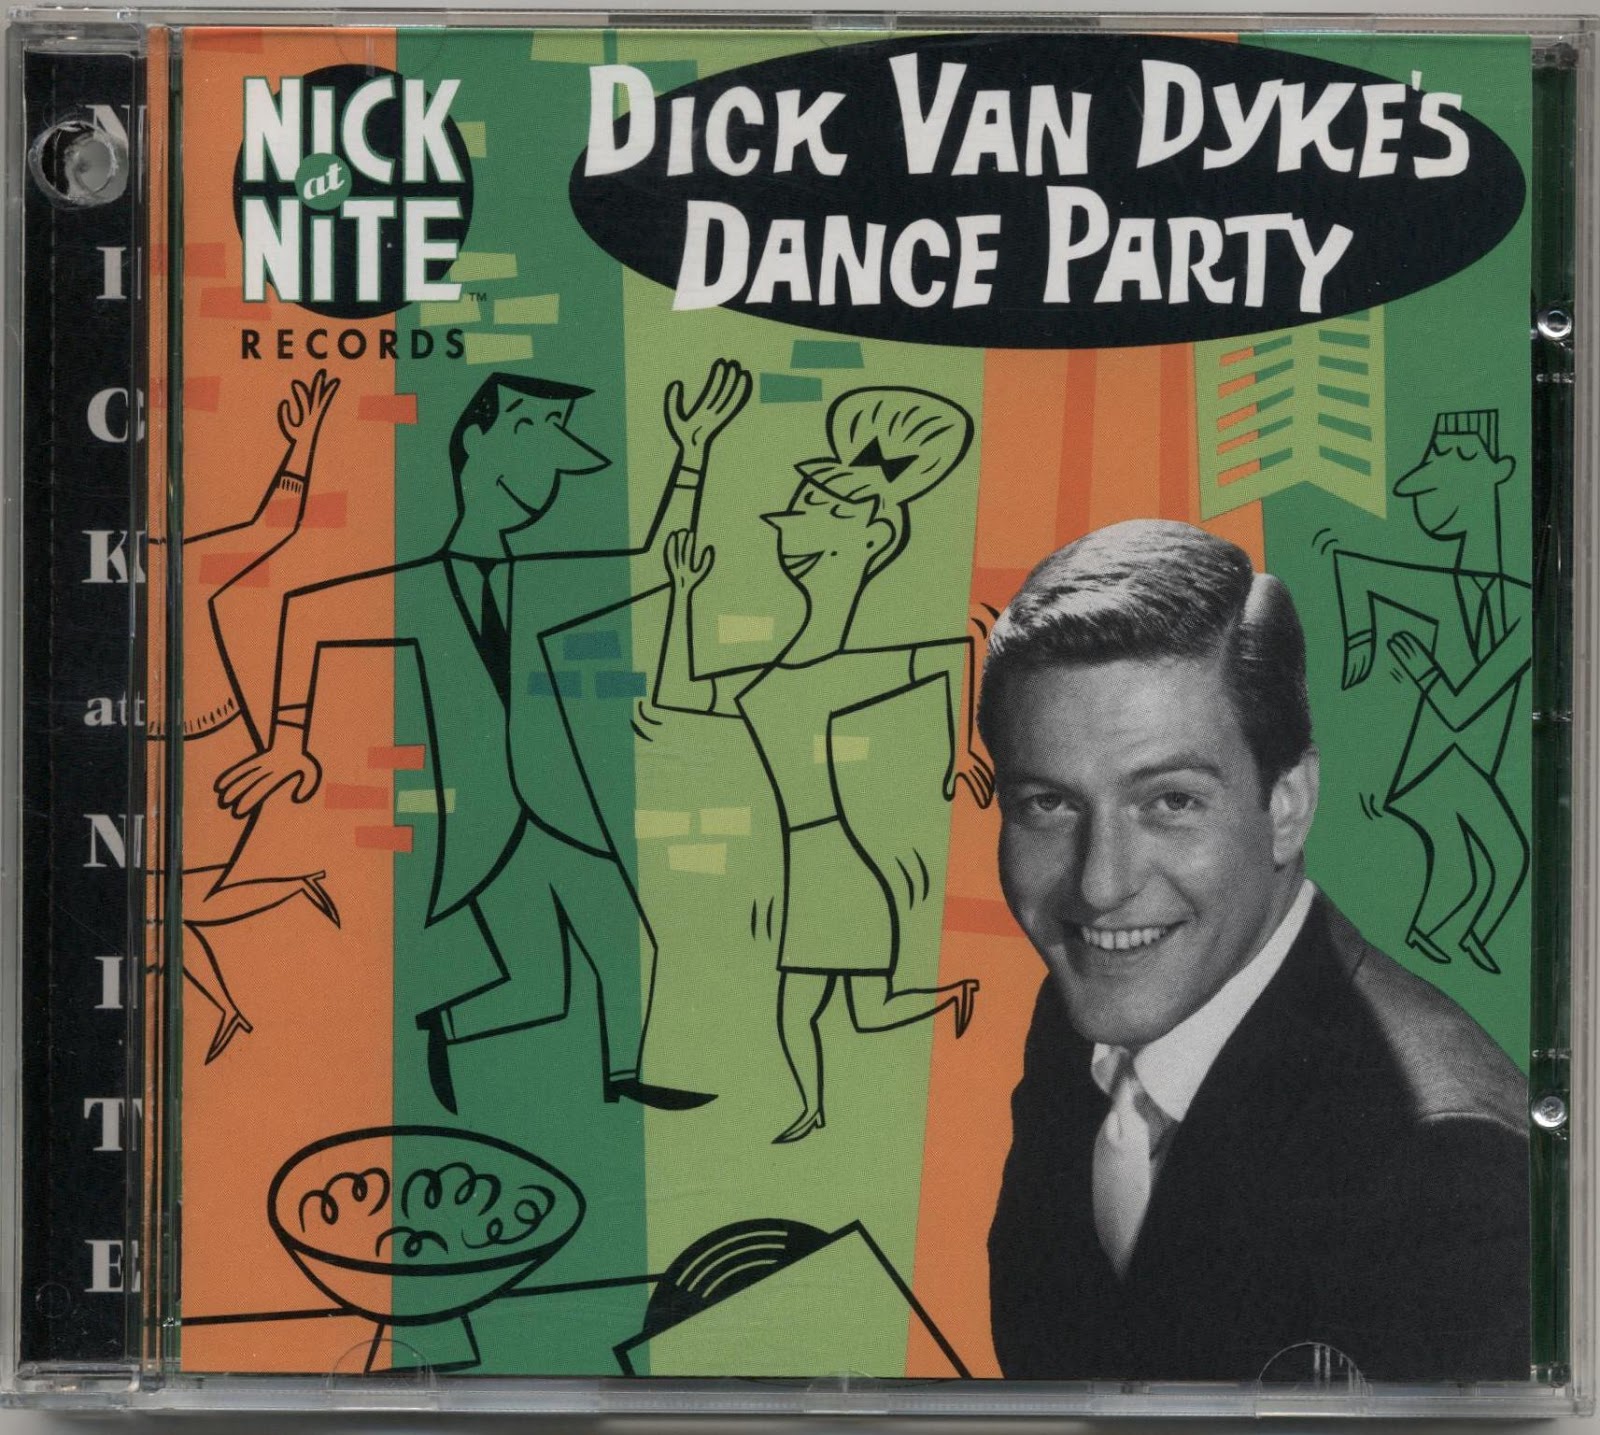 Dick van dyke tap dancing